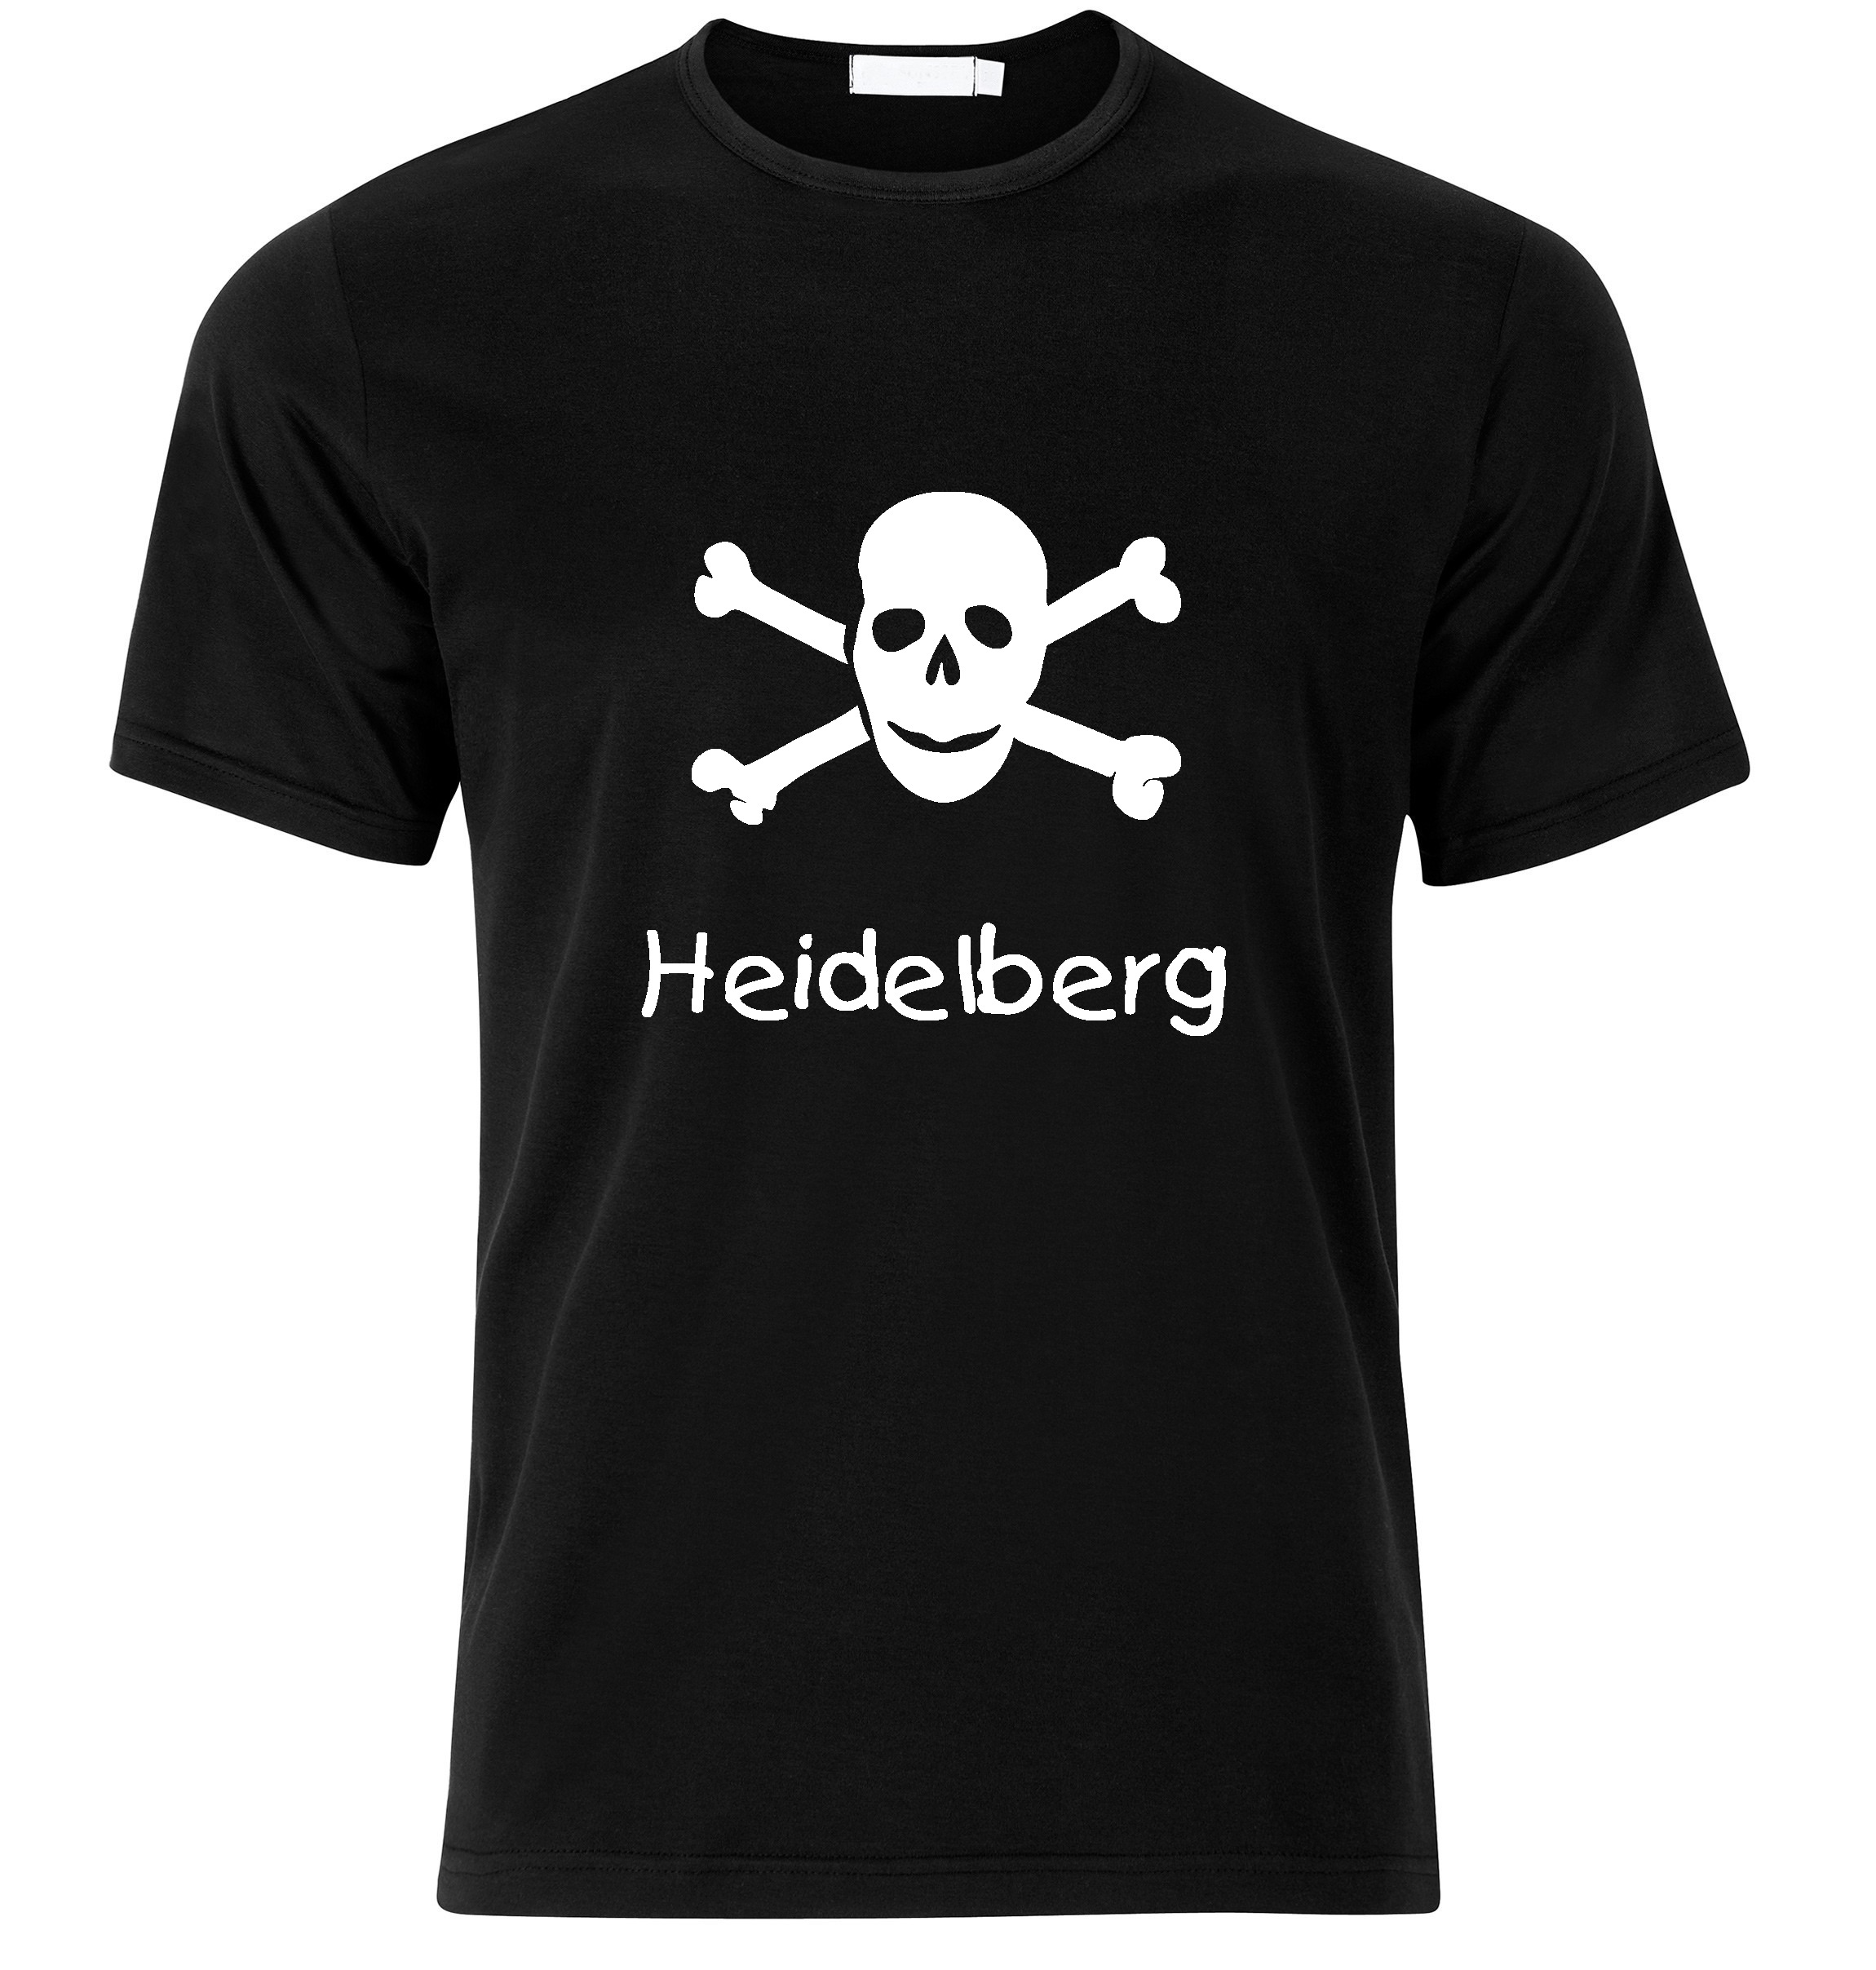 T-Shirt Heidelberg Jolly Roger, Totenkopf